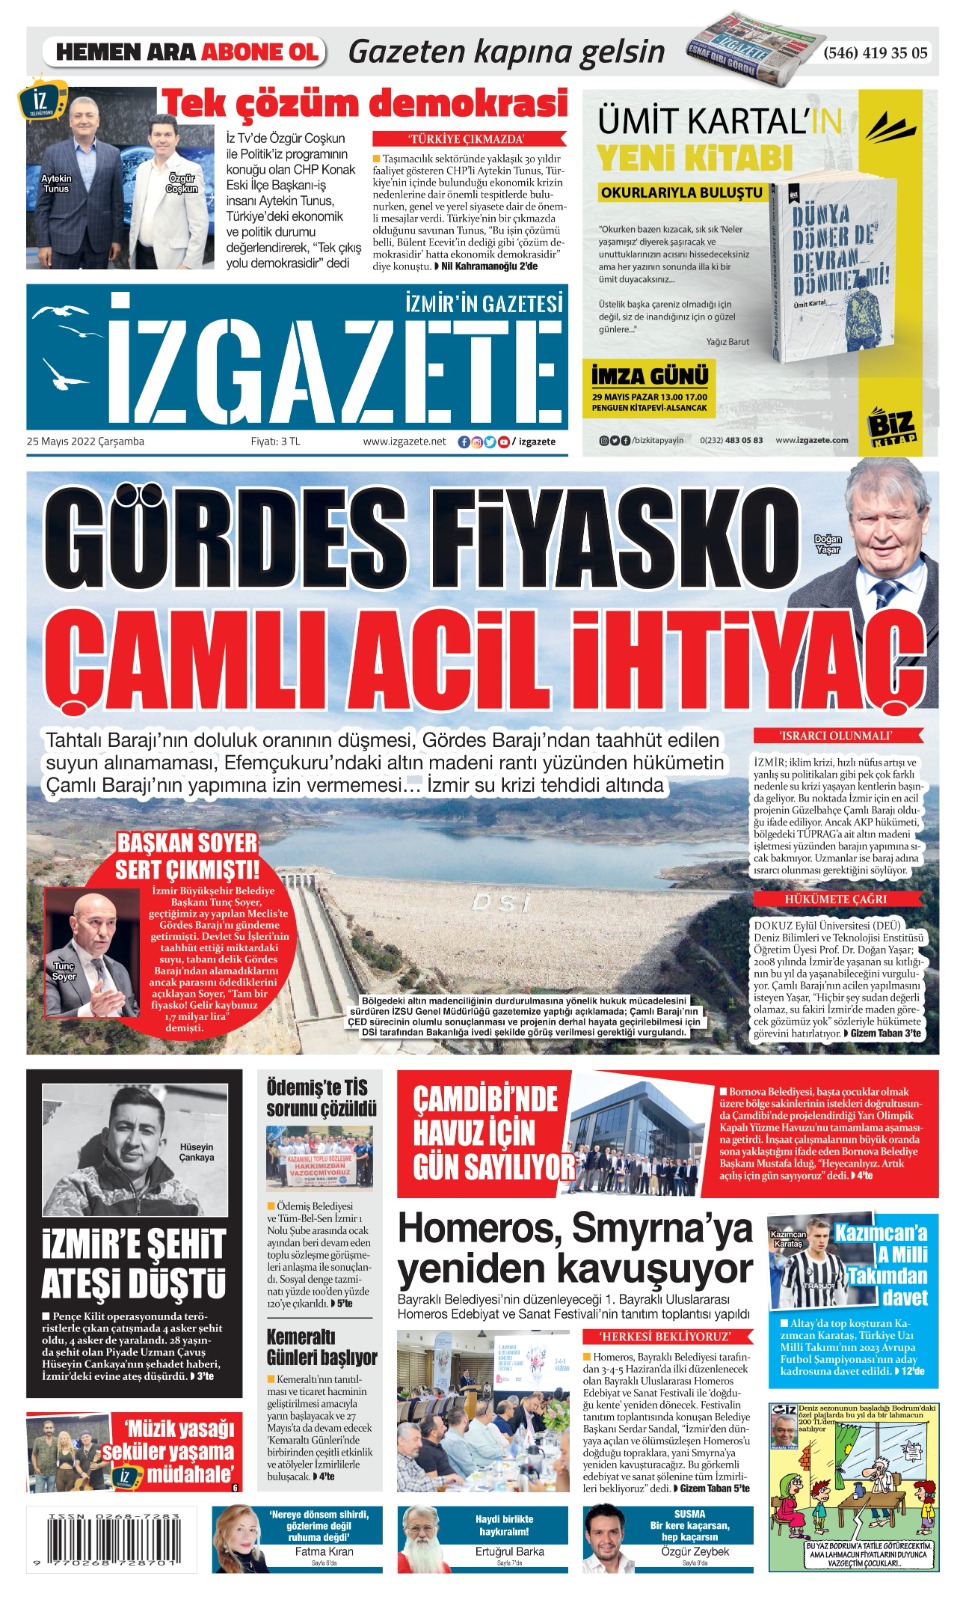 İz Gazete - İzmir'in Gazetesi - 25.05.2022 Manşeti